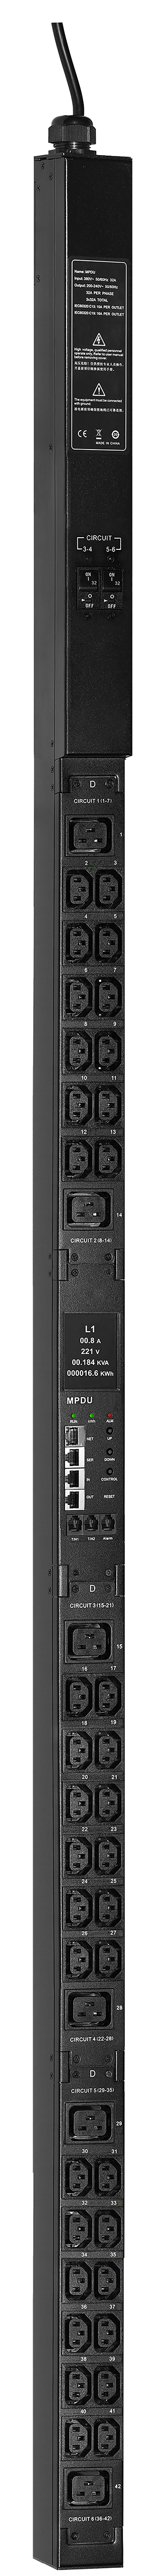 ITK ADMIN PDU с мониторингом PV1212 1Ф 32А 36С13 6С19 кабель 3м IEC60309